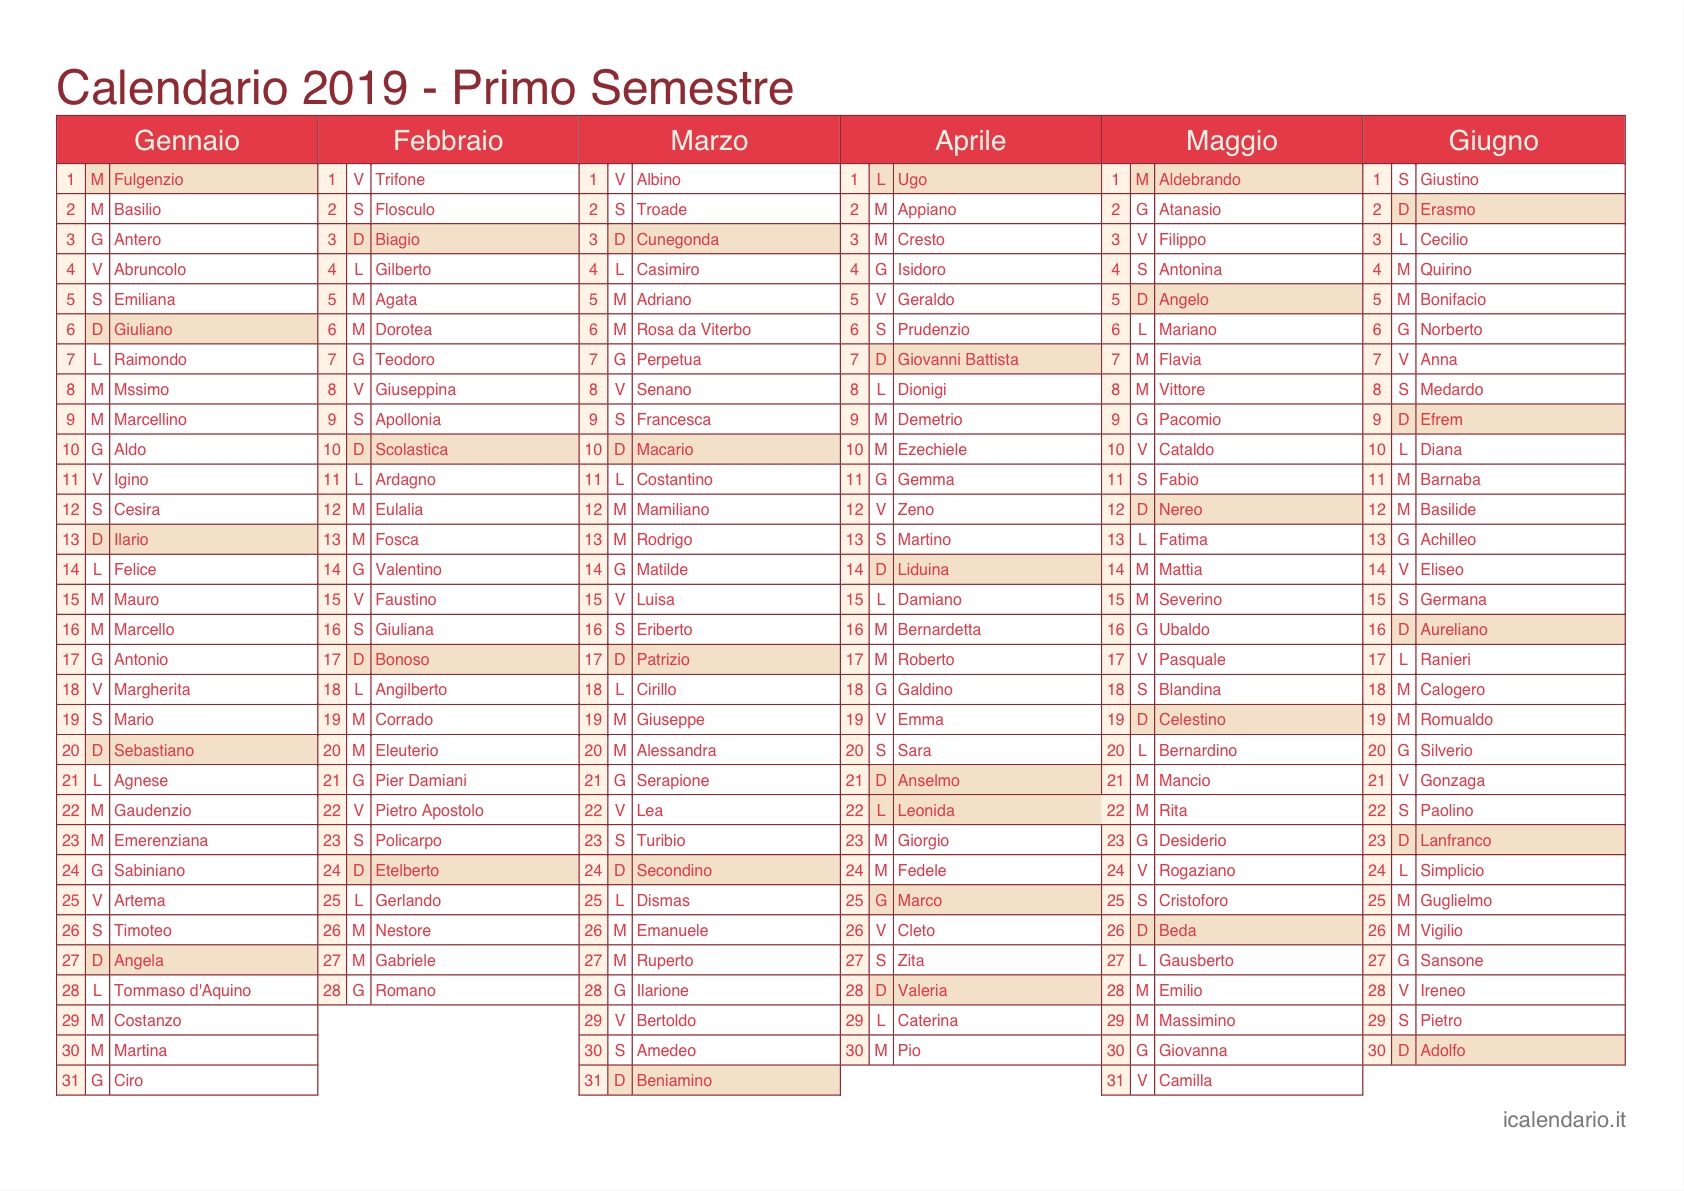 Calendario 2019 Da Stampare - Icalendario.it